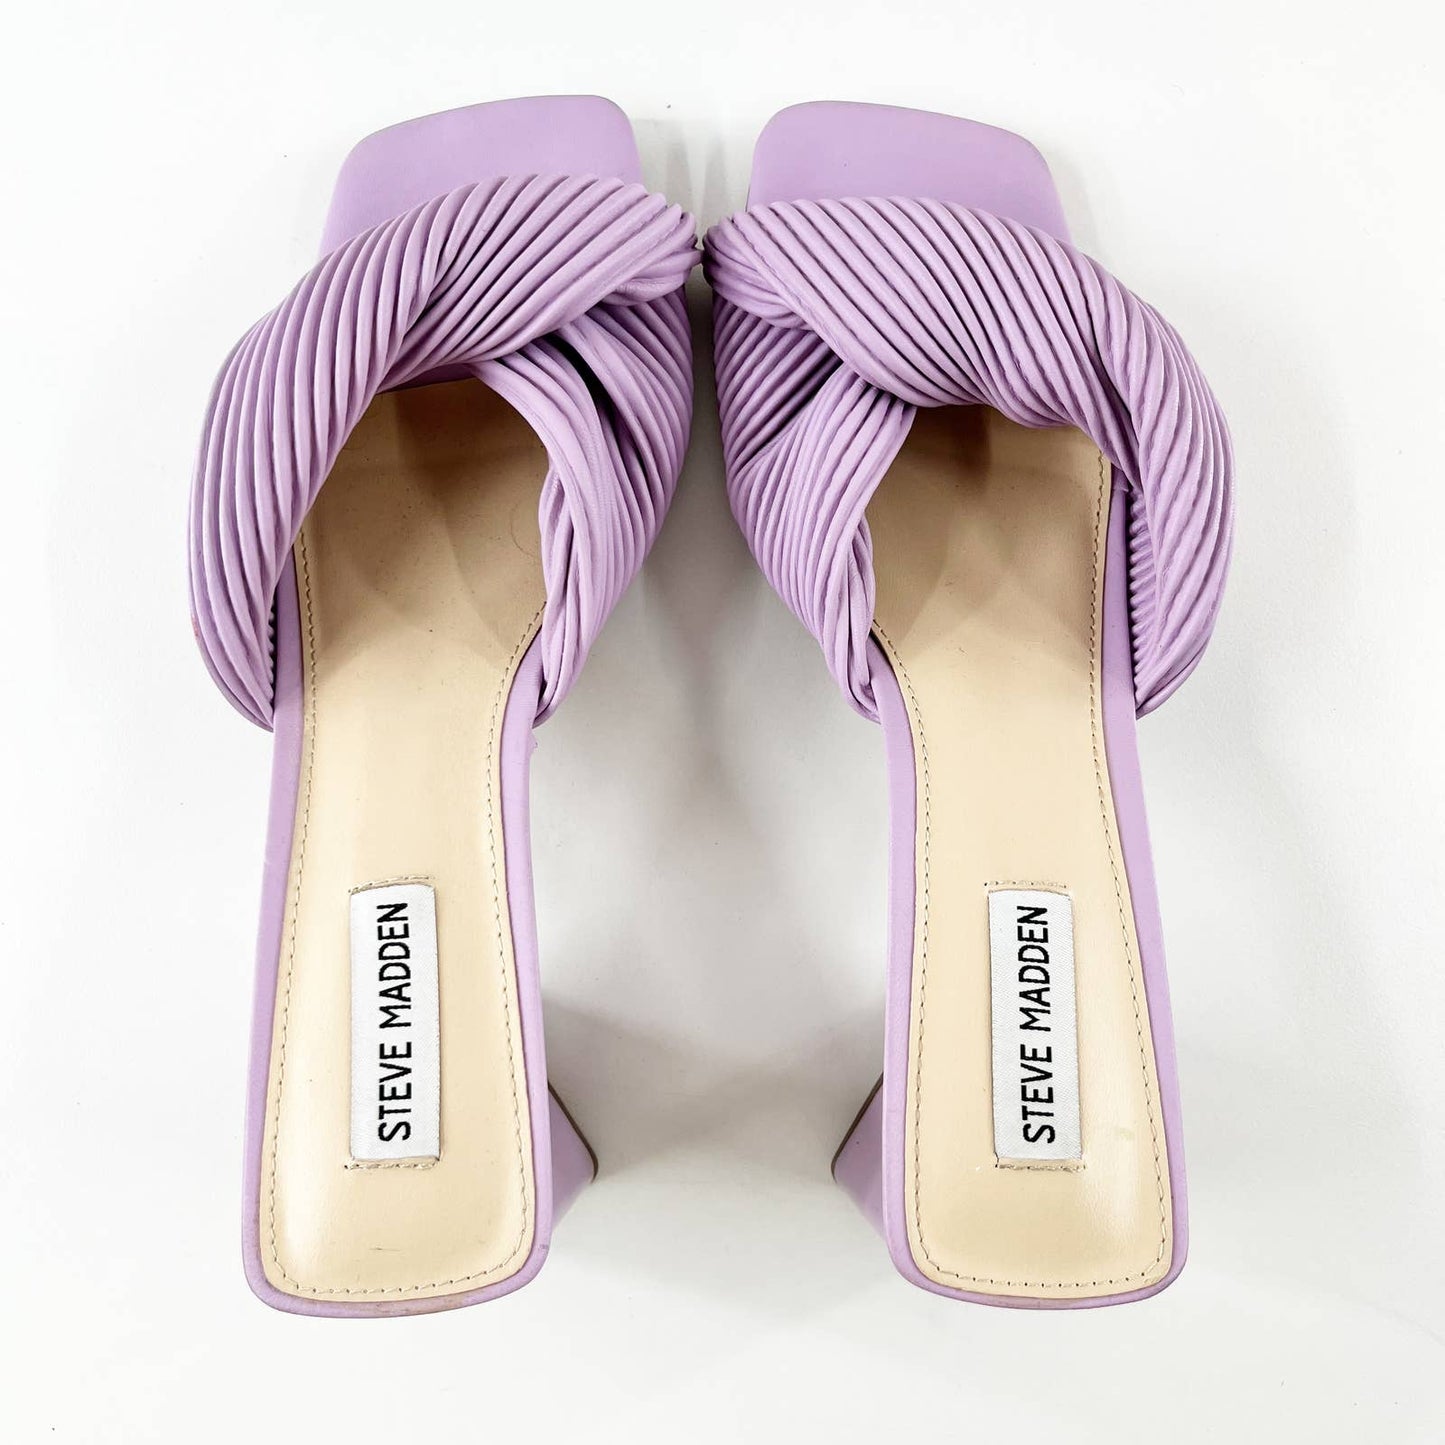 Steve Madden Evela Knotted Slide Sandal Block Heel Shoes Lilac Purple 10